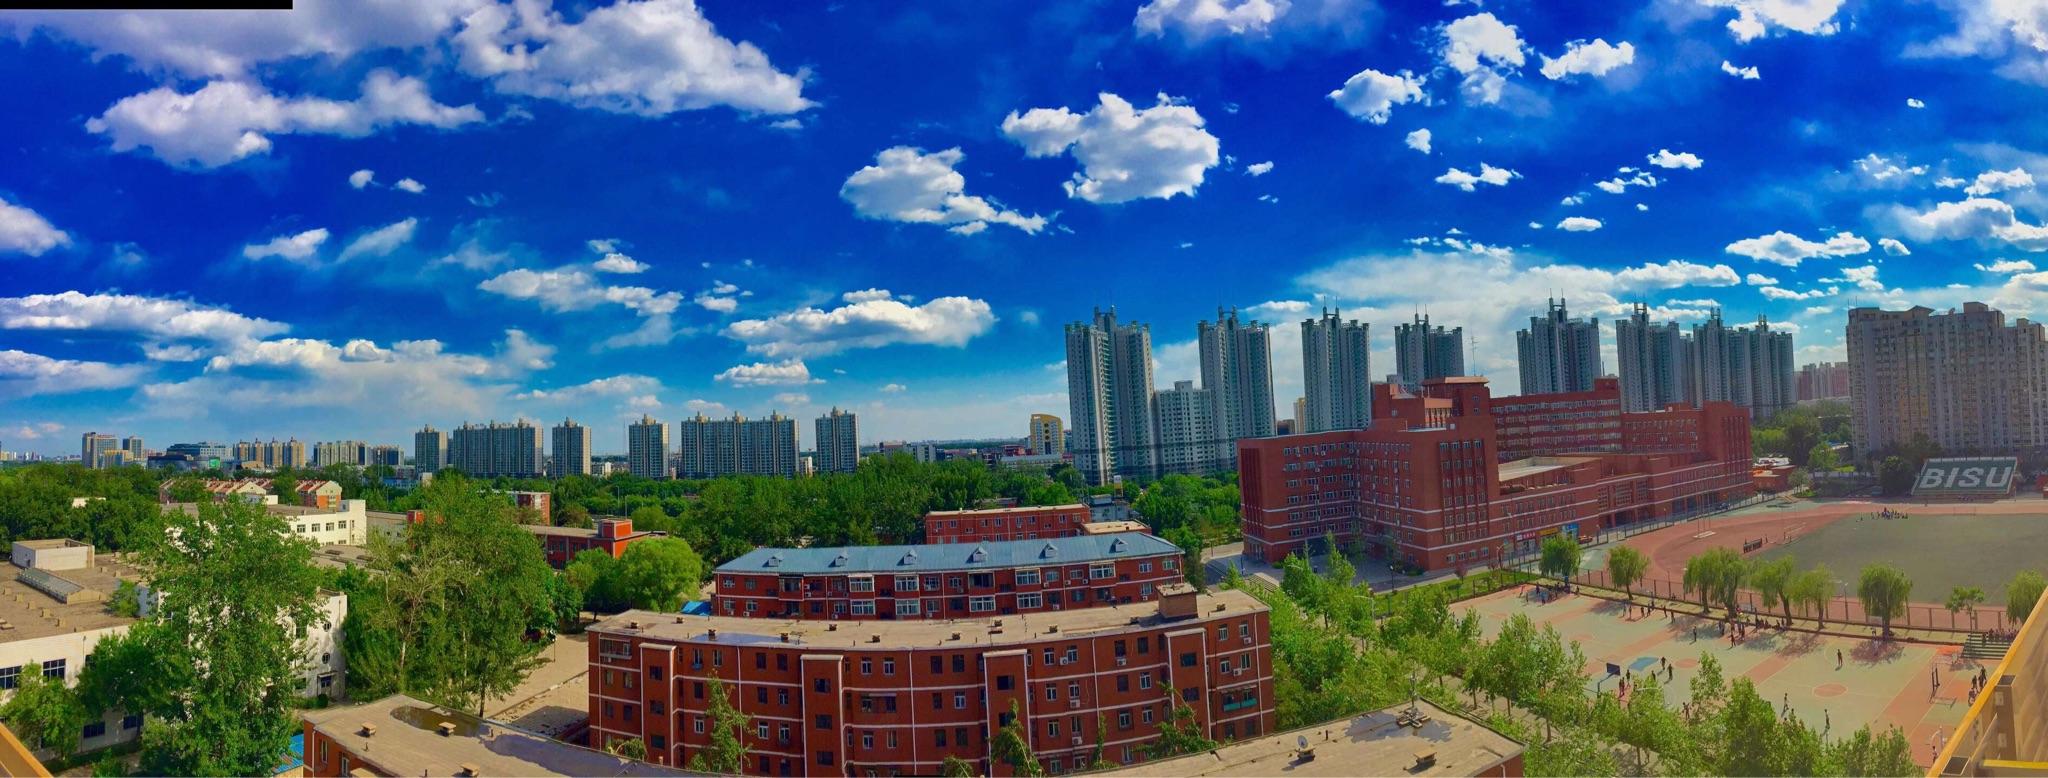 北京海淀外国语实验学校